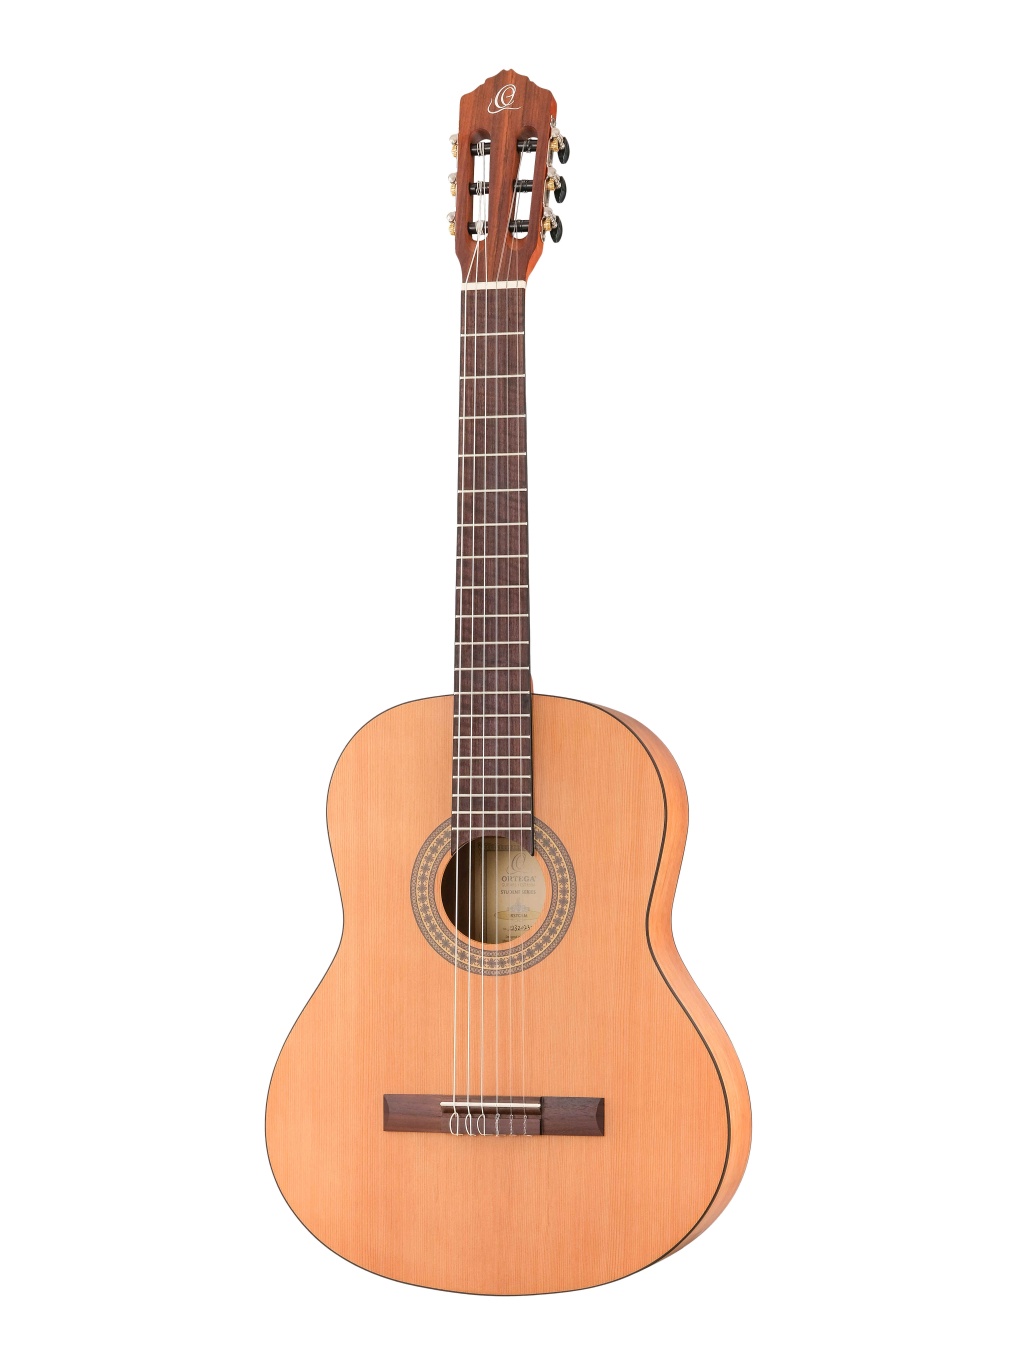 RSTC5M Student Series Классическая гитара, размер 4/4, матовая, Ortega